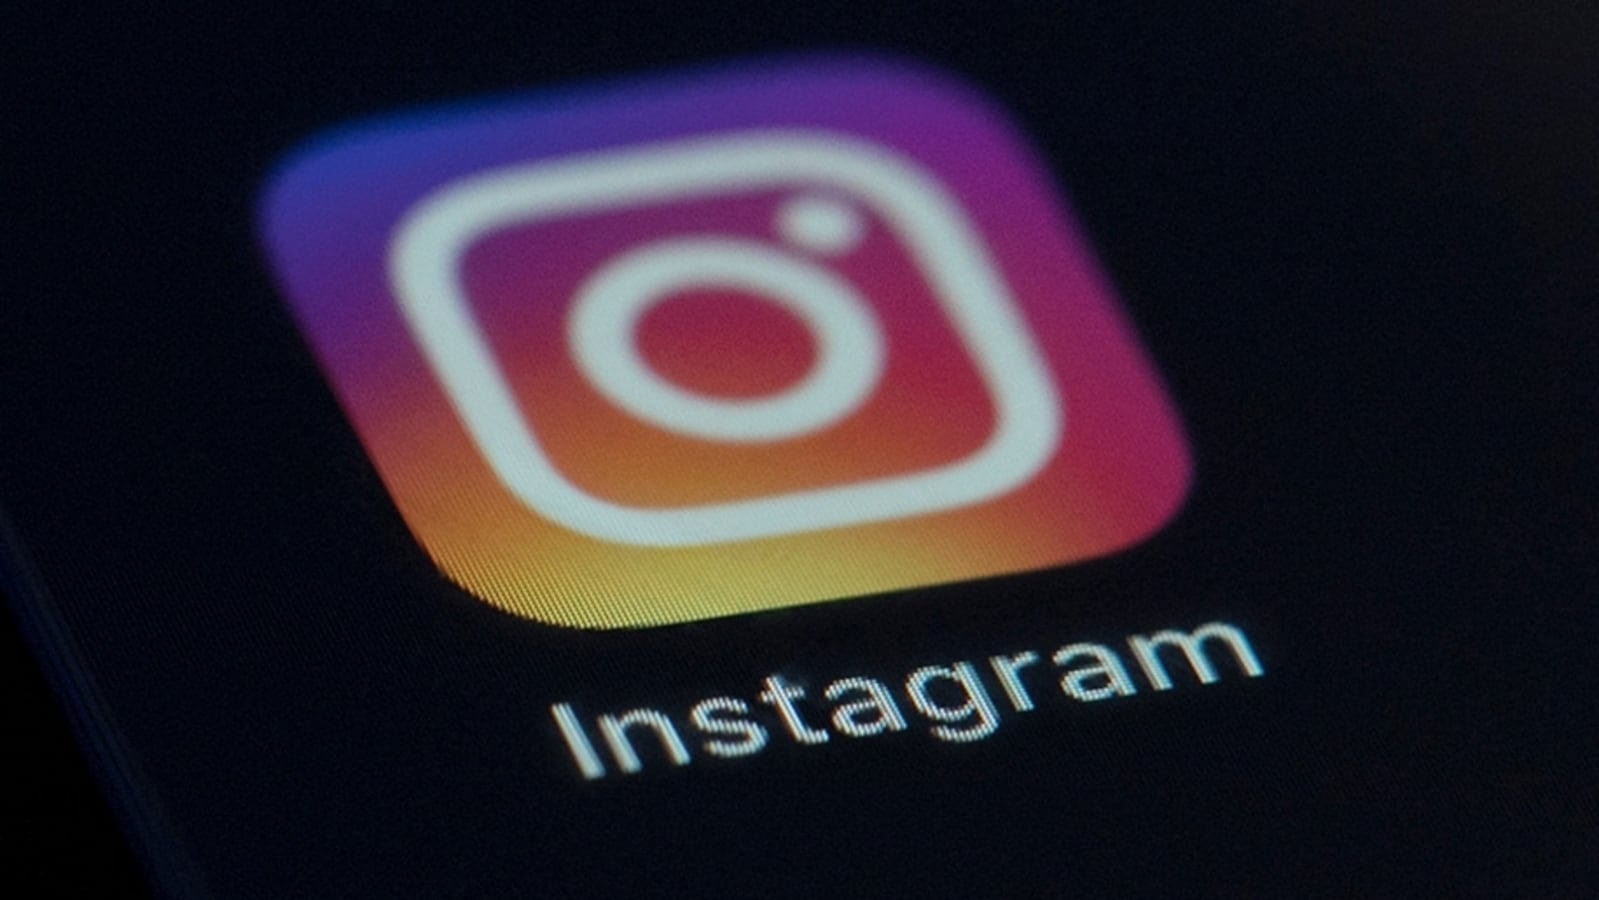 Amankan obrolan Instagram Anda dengan mode lenyap, periksa langkah-langkah untuk mengaktifkannya